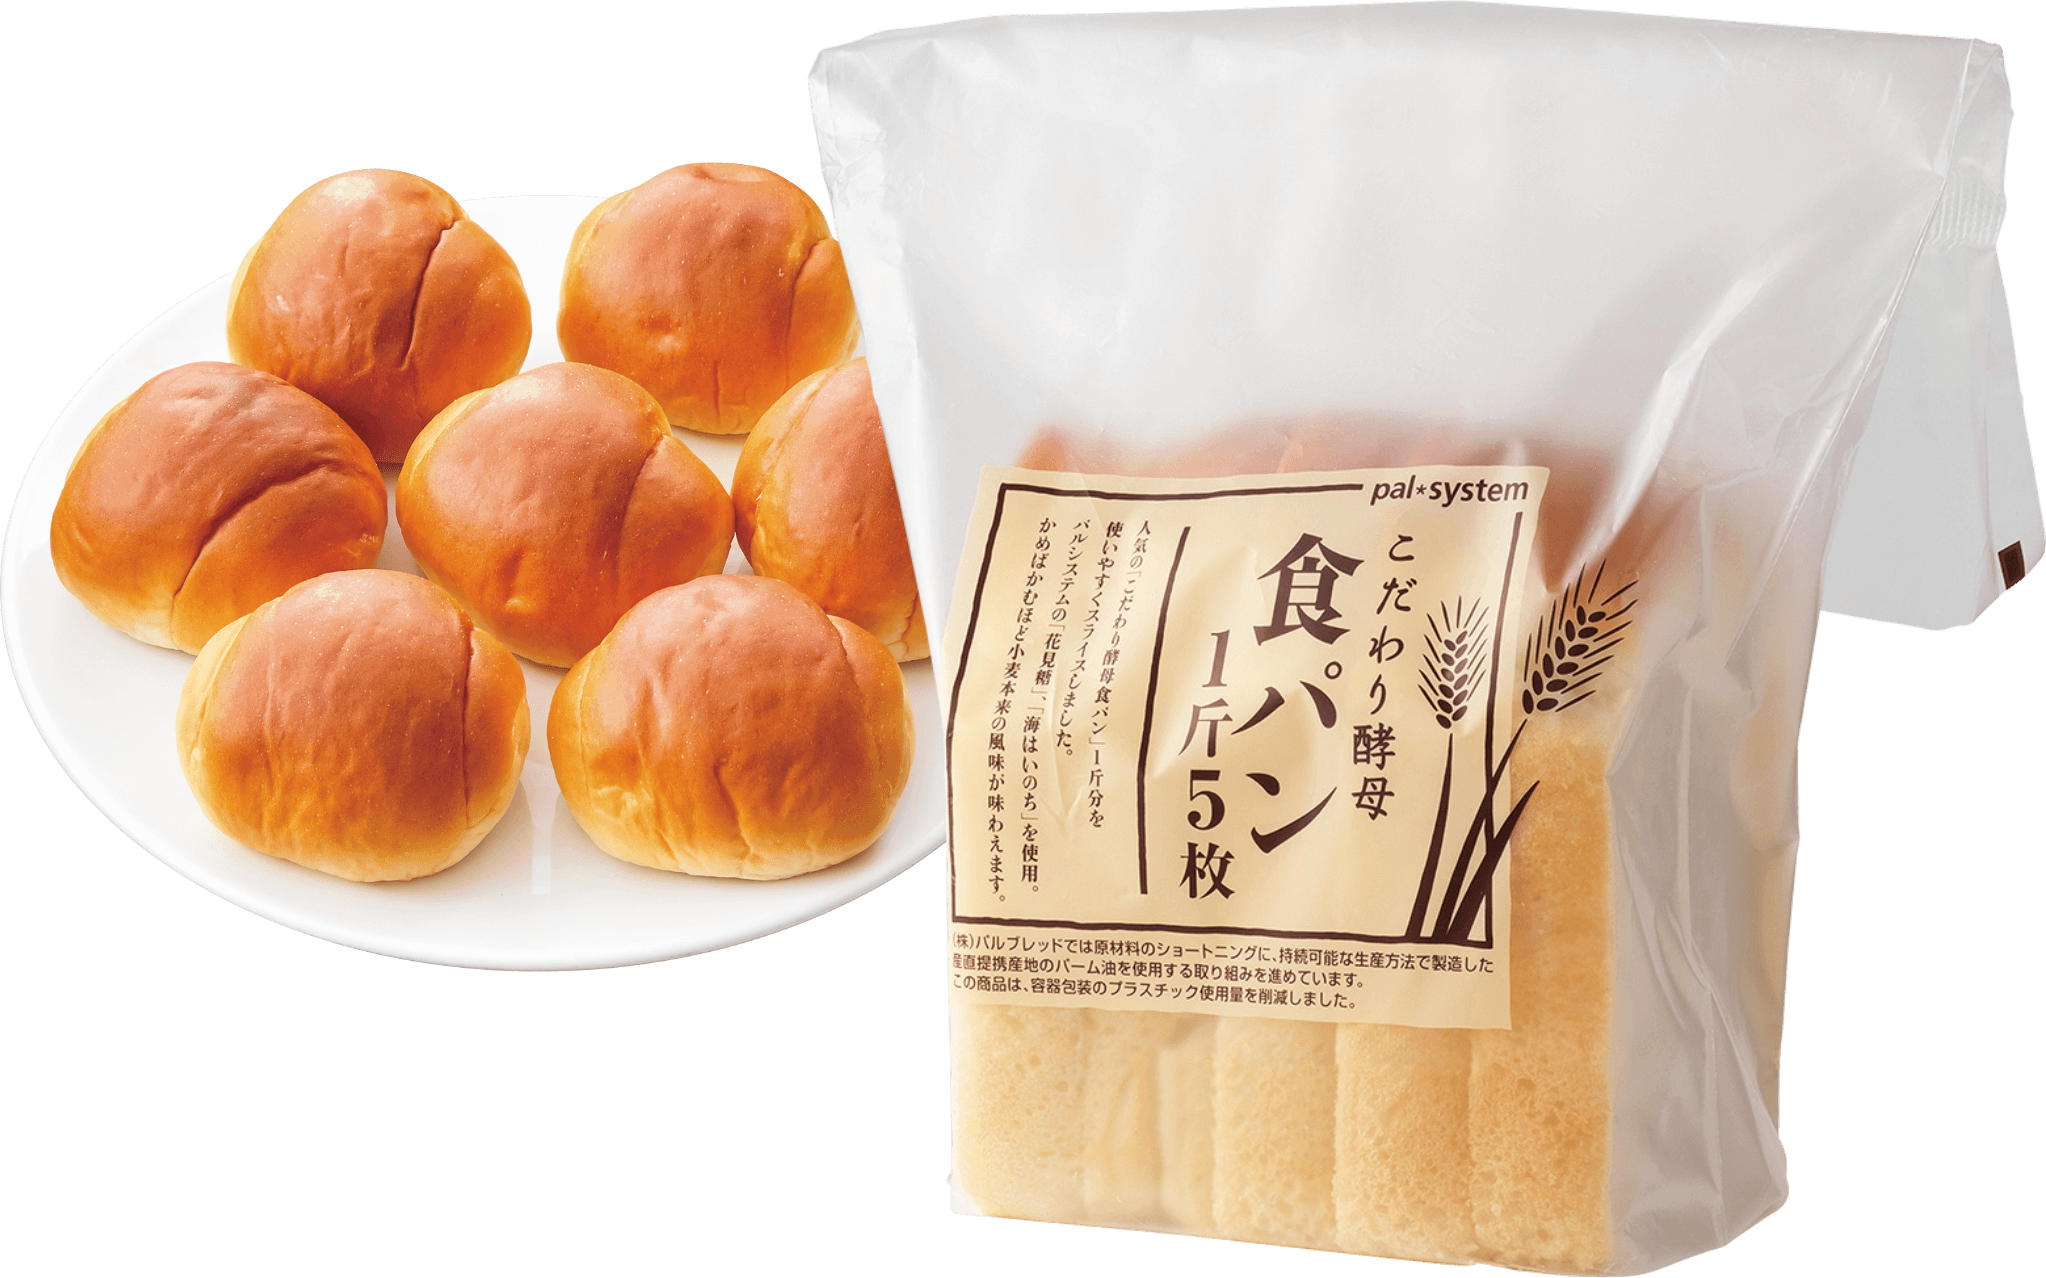 提供するパンには、例えばロールパンやこだわり酵母食パンなどがあります。